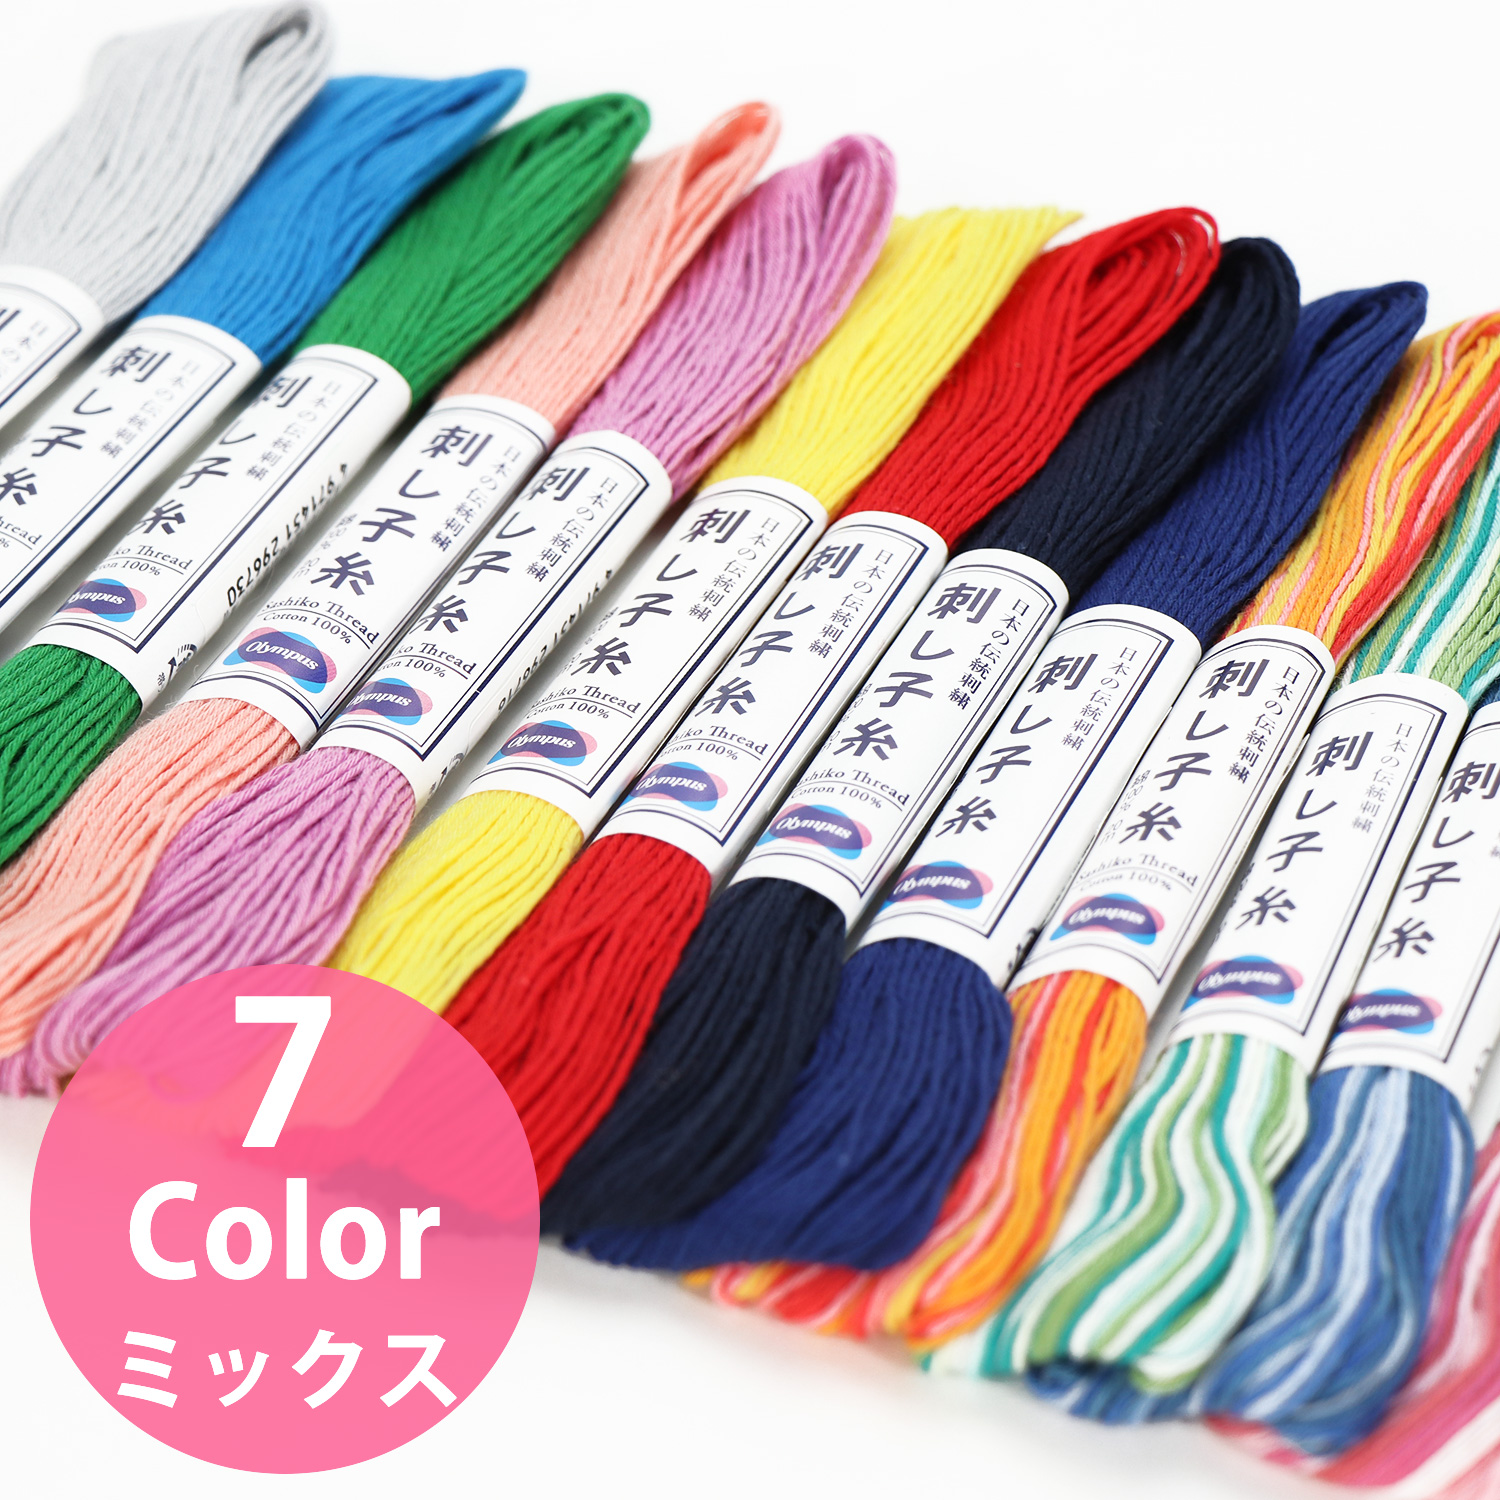 Olympus SASHIKO Embroidery Thread MIX 1pcs 20m Skein (pack)